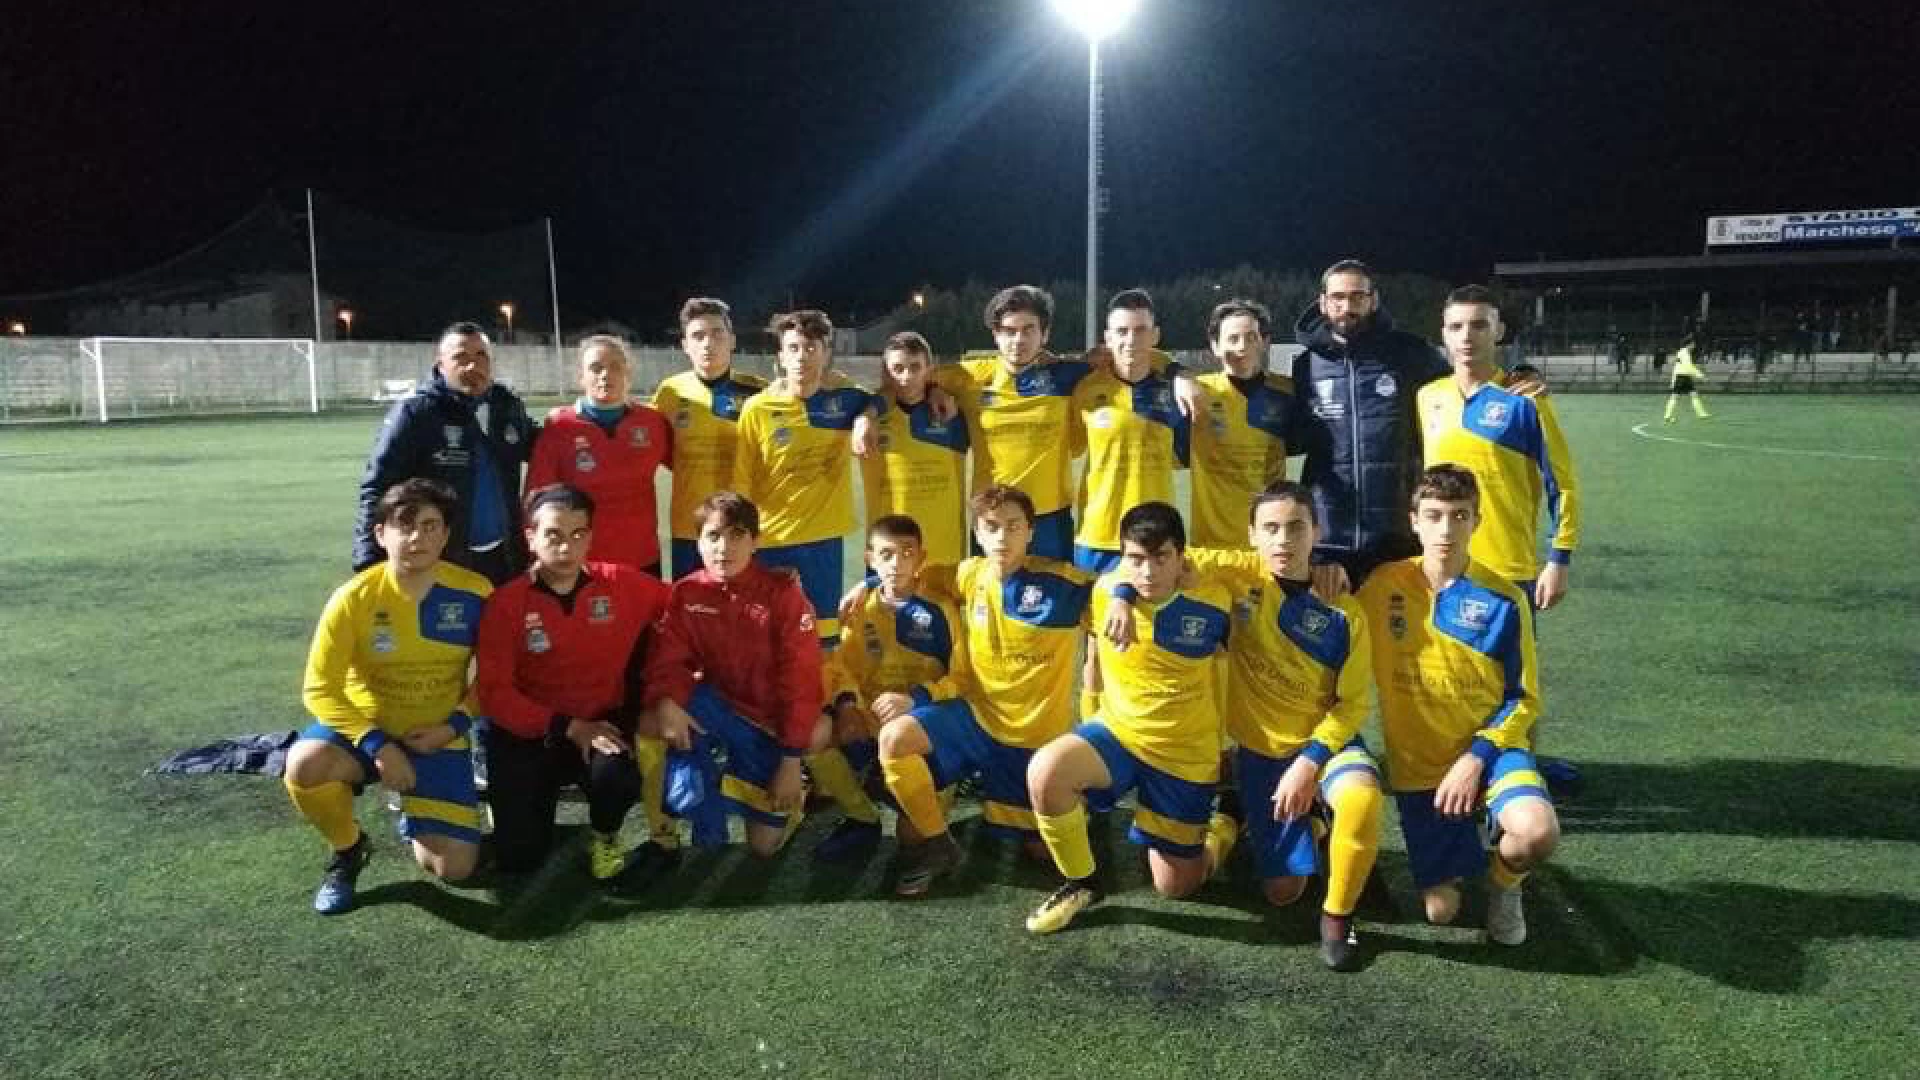 Calcio giovanile: i Giovanissimi della Boys Roccaravindola sconfitti dall’Agnonese nell’ultima giornata di campionato.